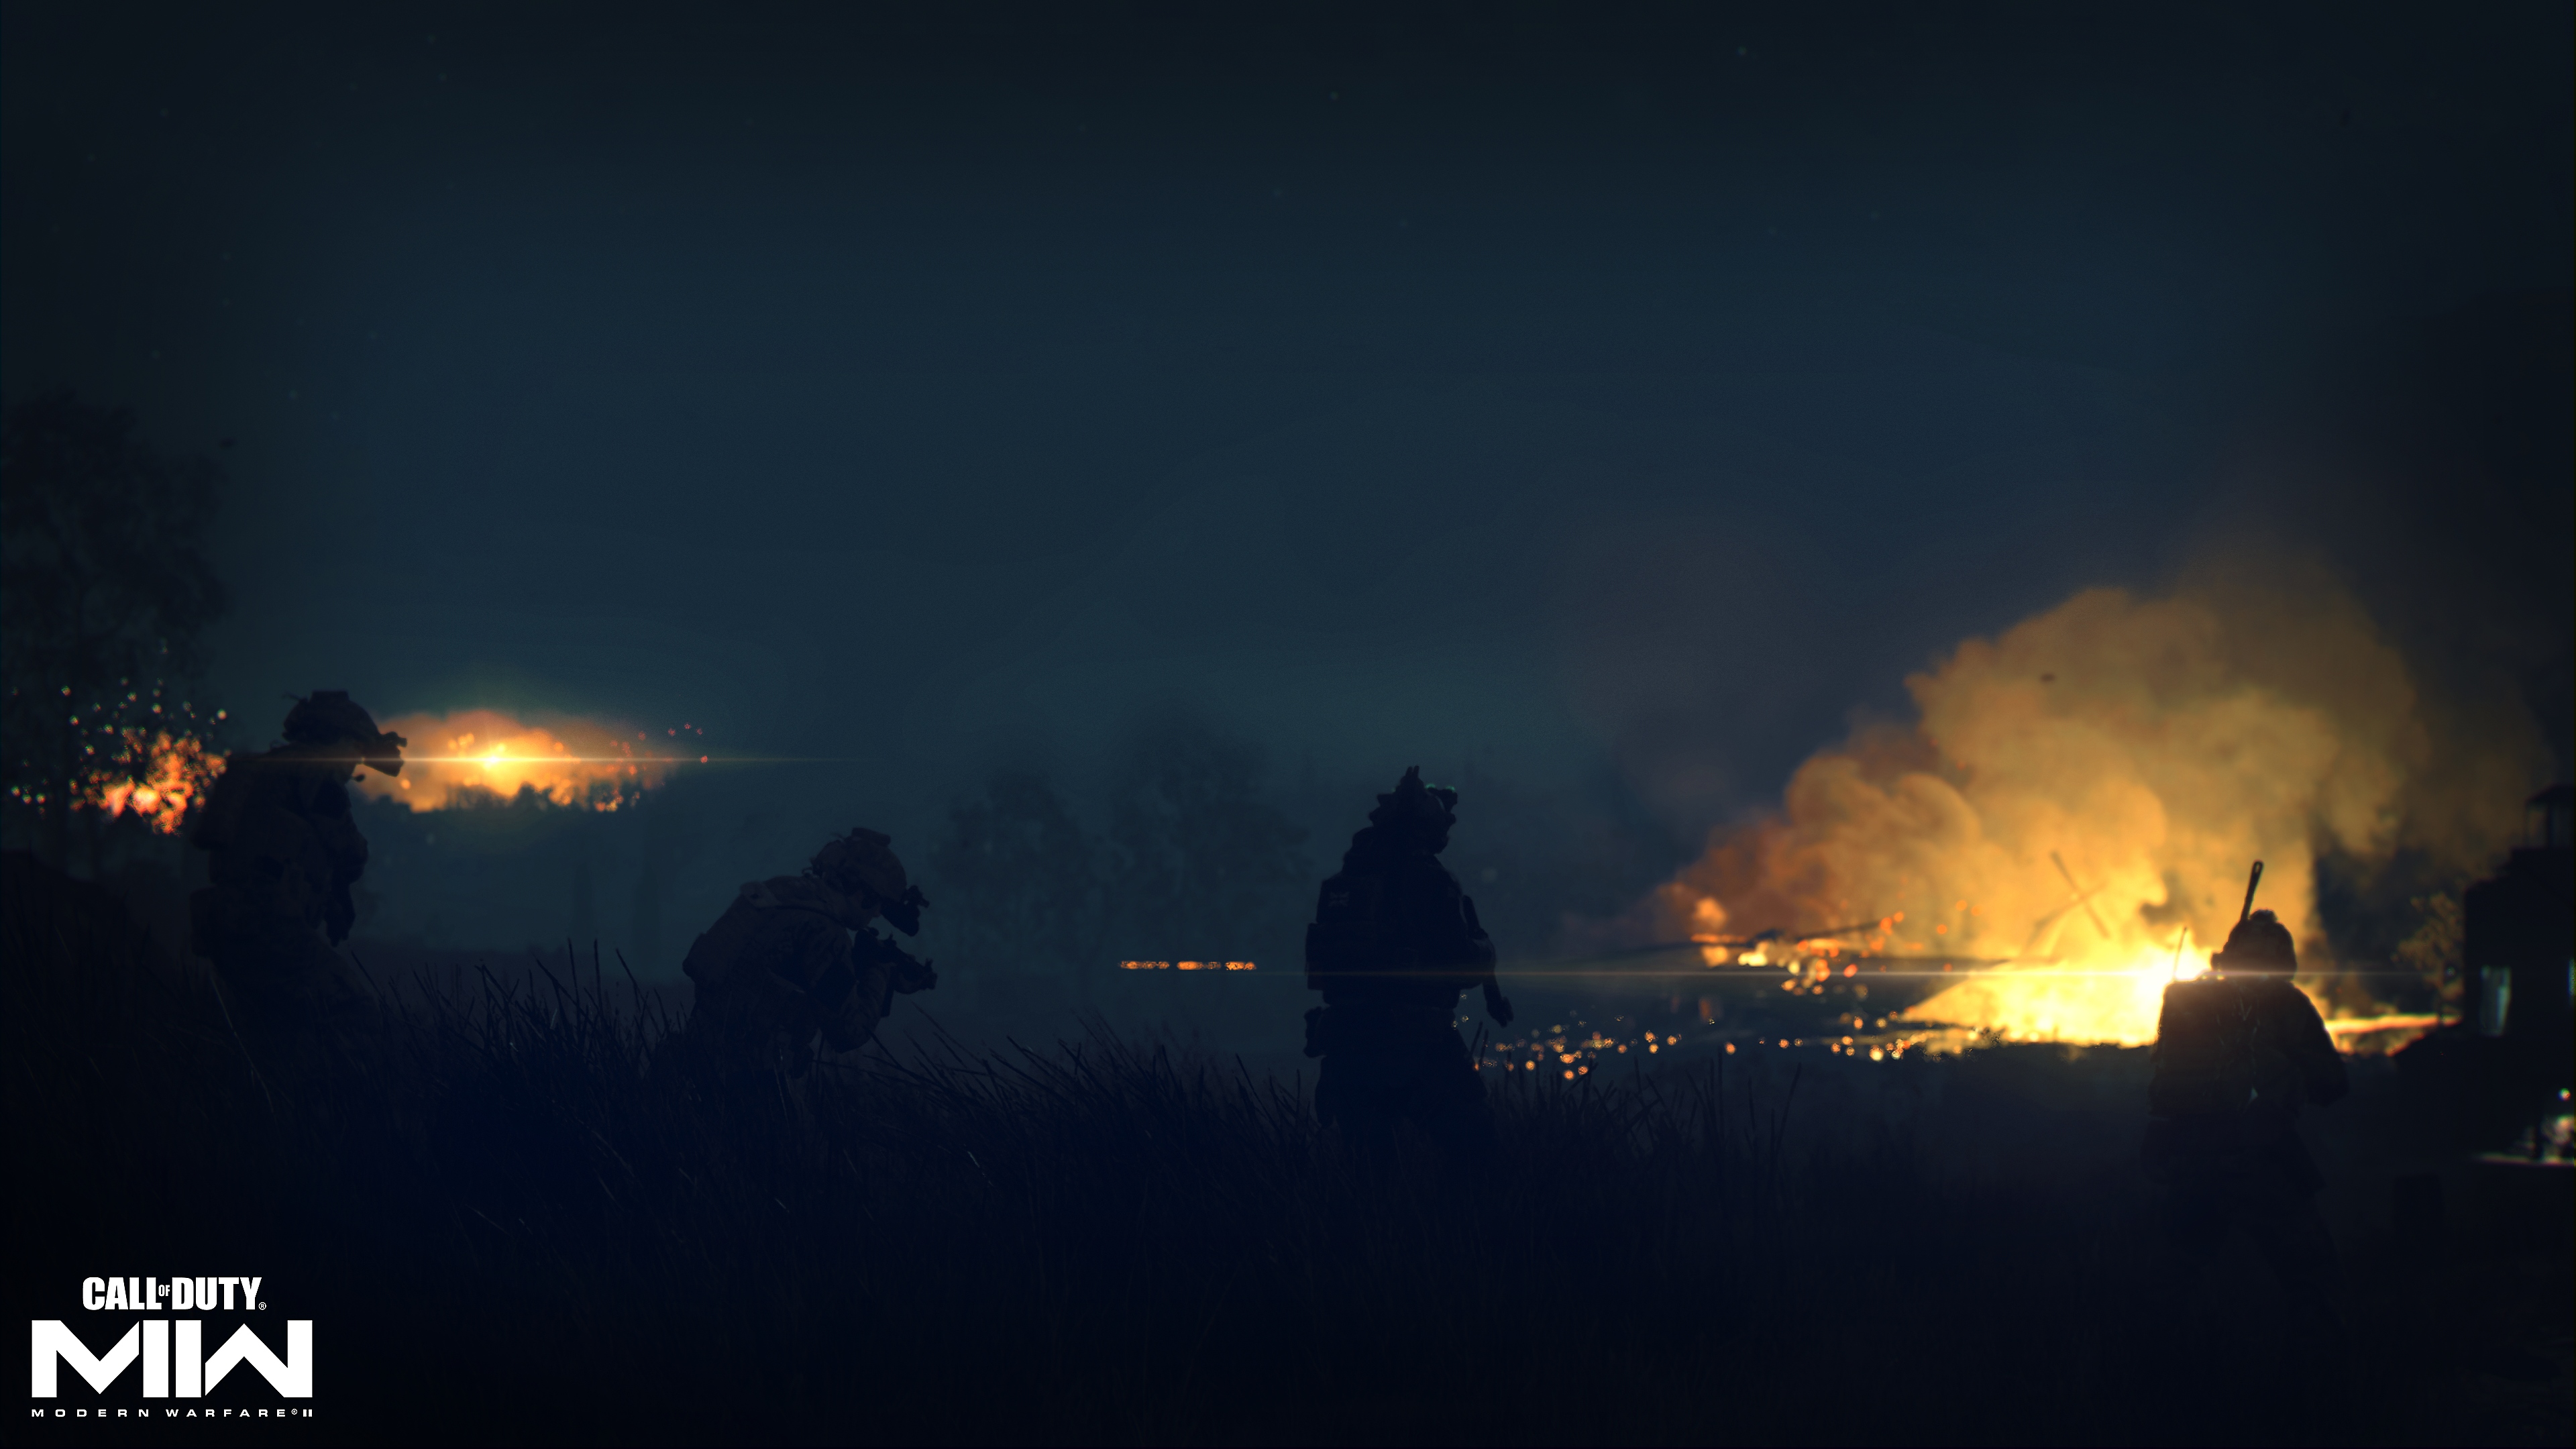 Call of Duty: Modern Warfare 2 2022 – kuvakaappaus tulesta kaukaisuudessa synkässä maisemassa